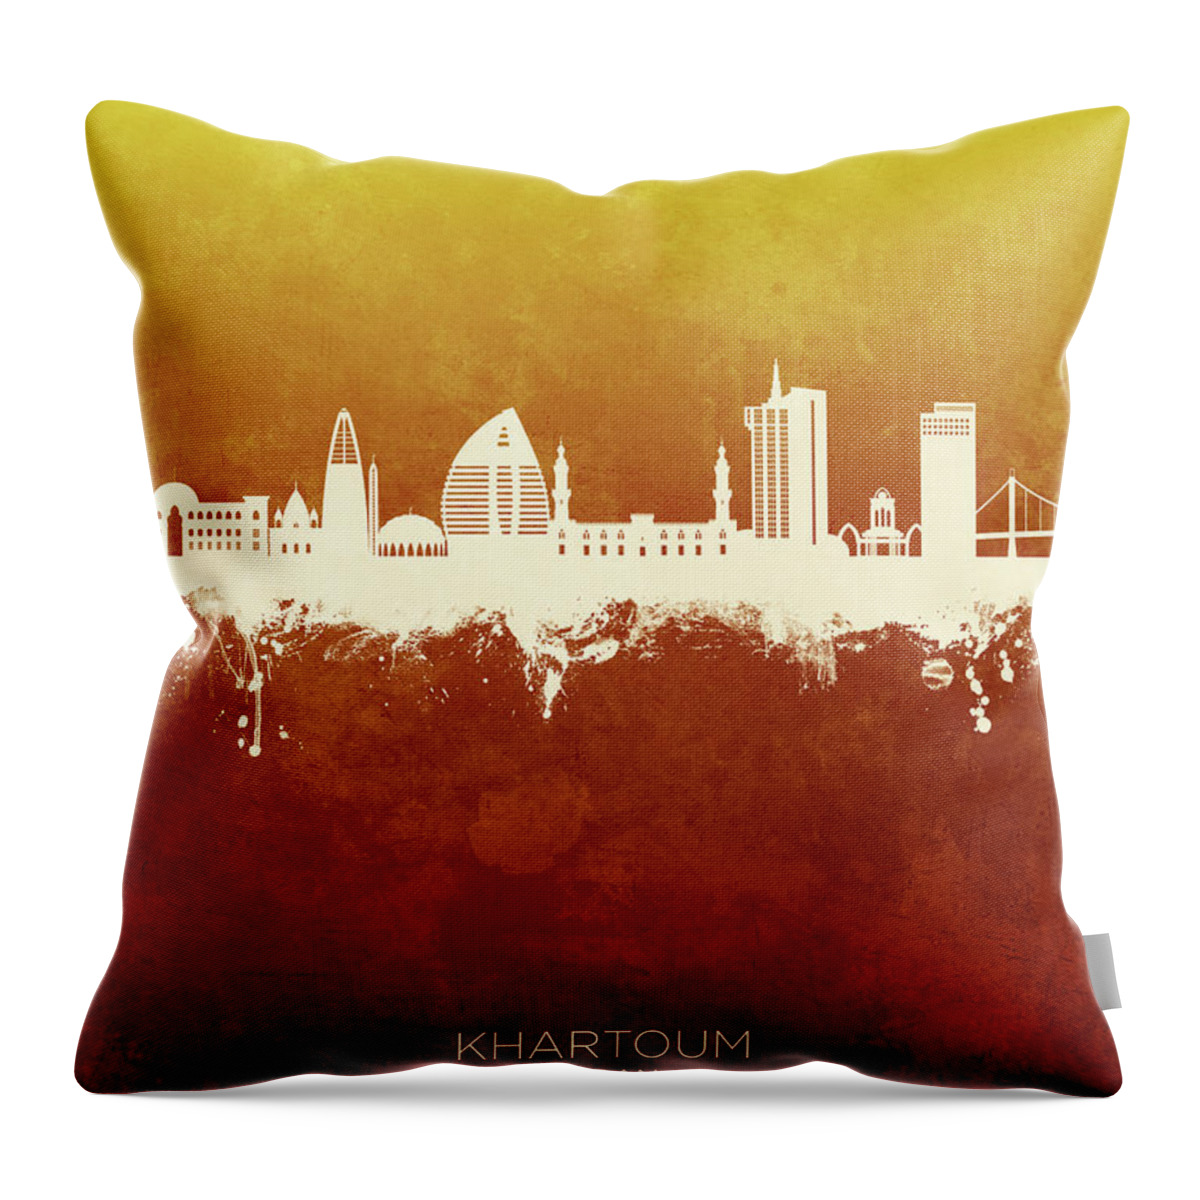 Khartoum Throw Pillow featuring the digital art Khartoum Sudan Skyline #35 by Michael Tompsett